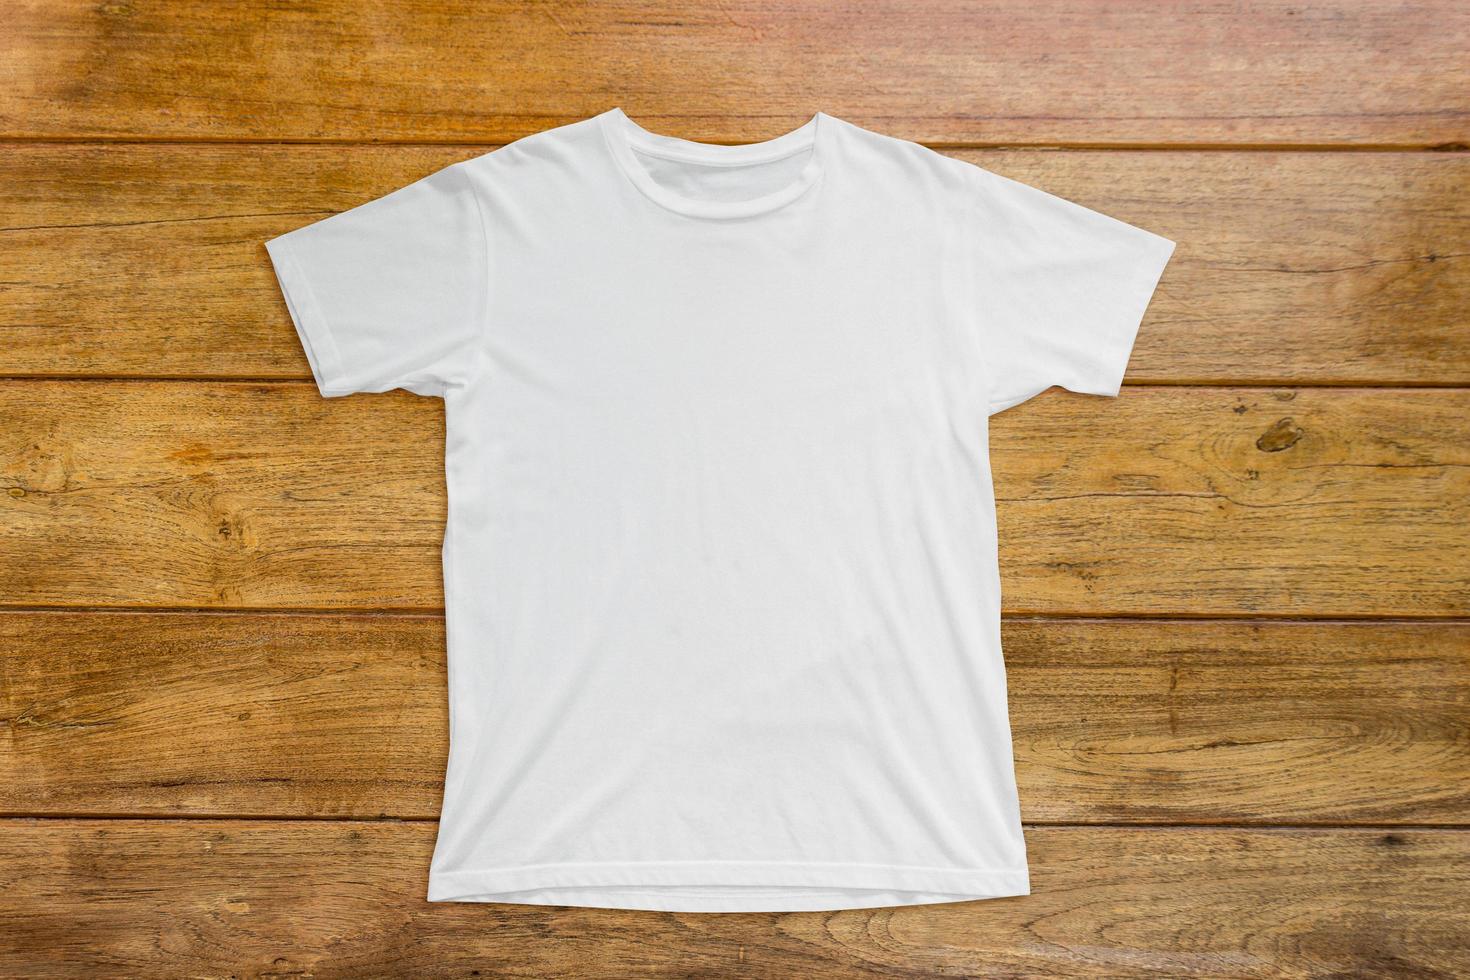 camiseta blanca sobre fondo de madera para plantilla de maqueta foto